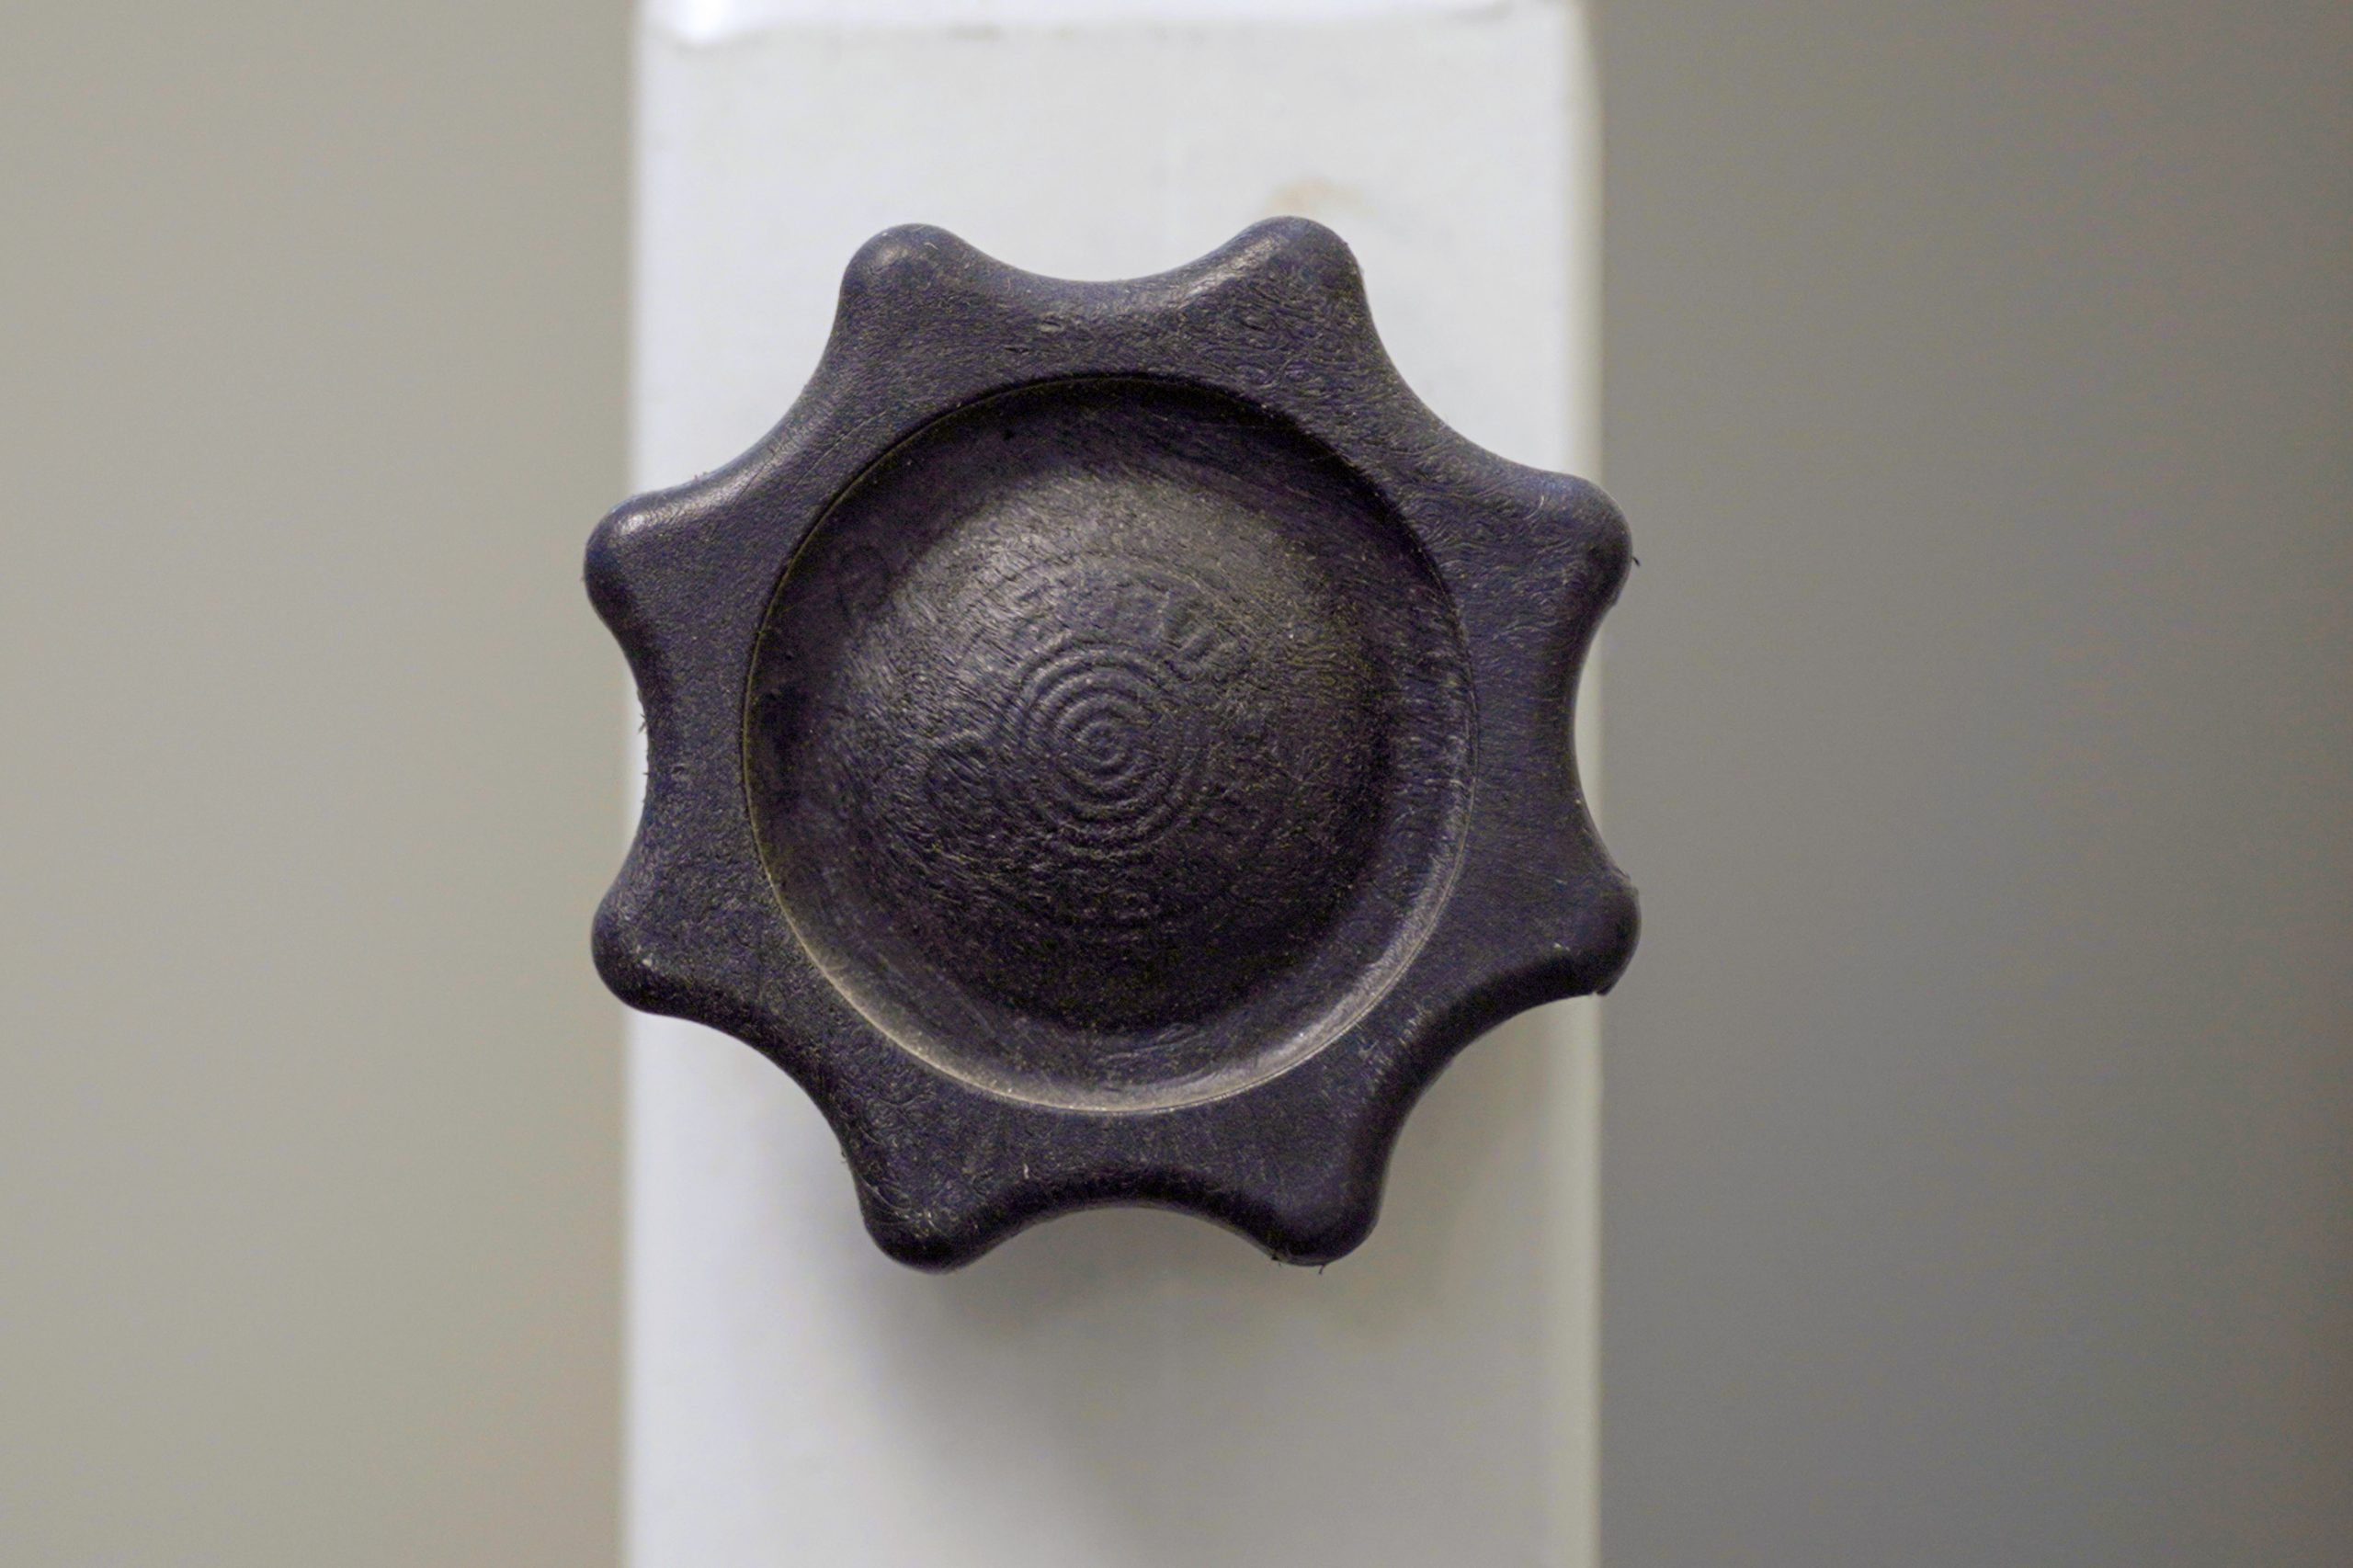 A knob of a tap